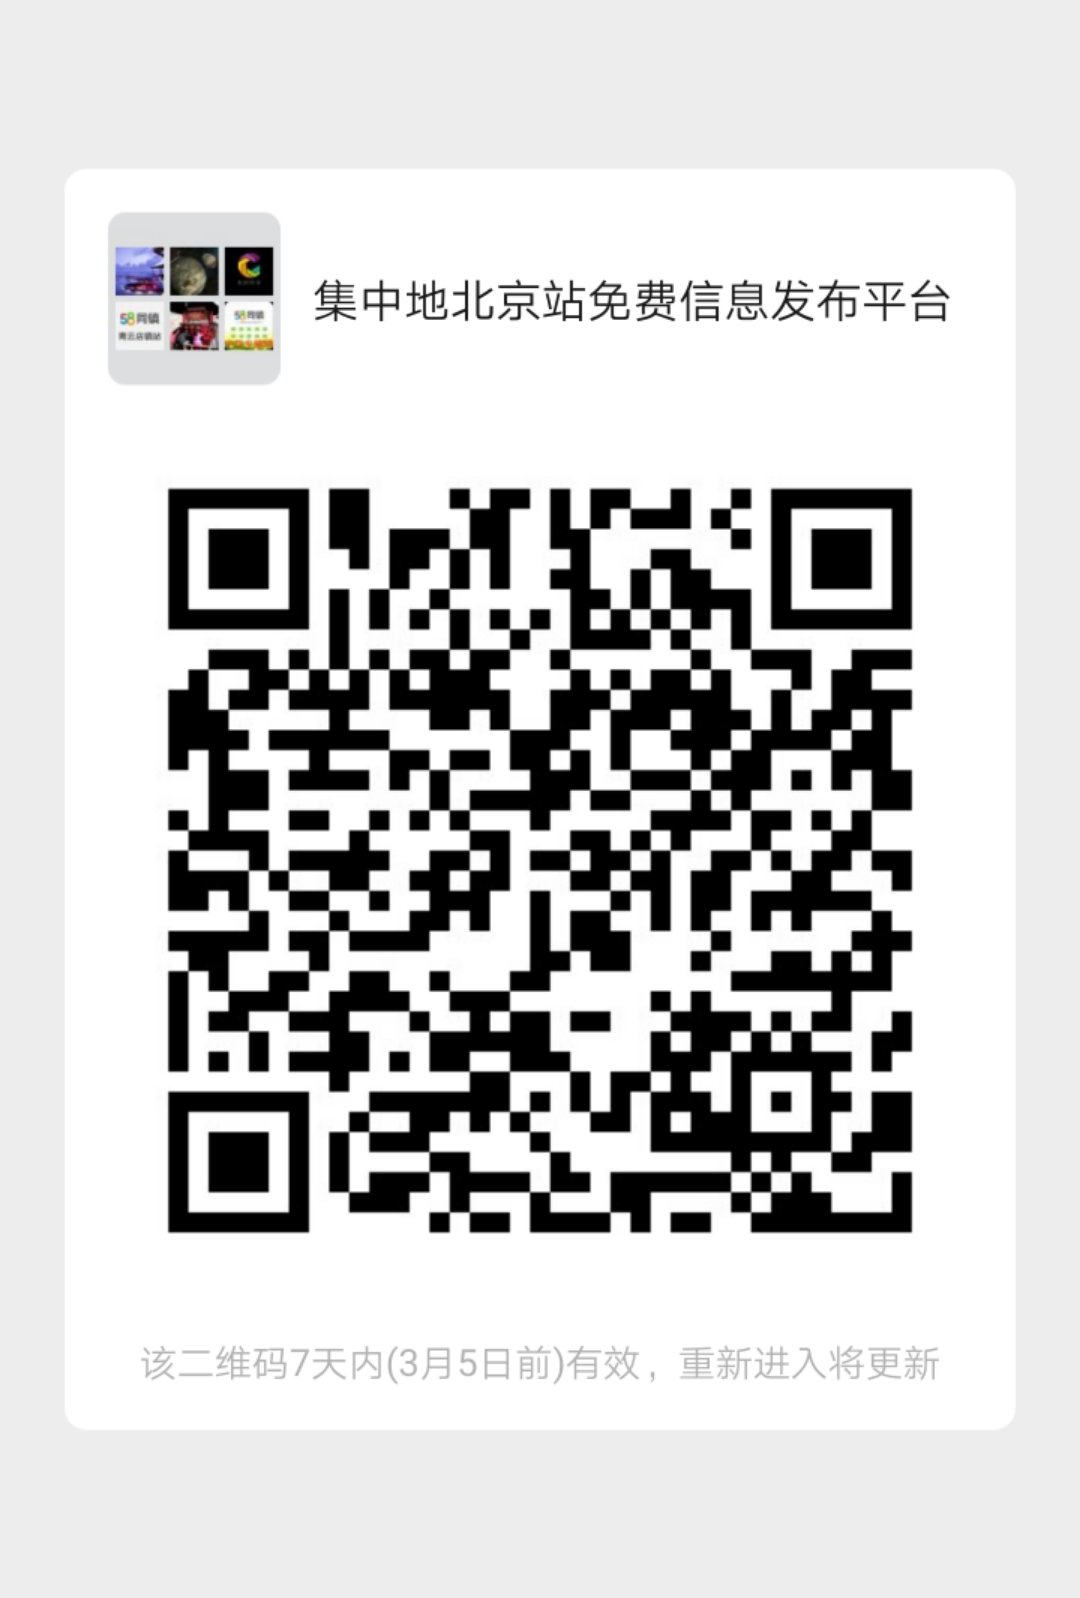 集中地北京站免费信息发布平台